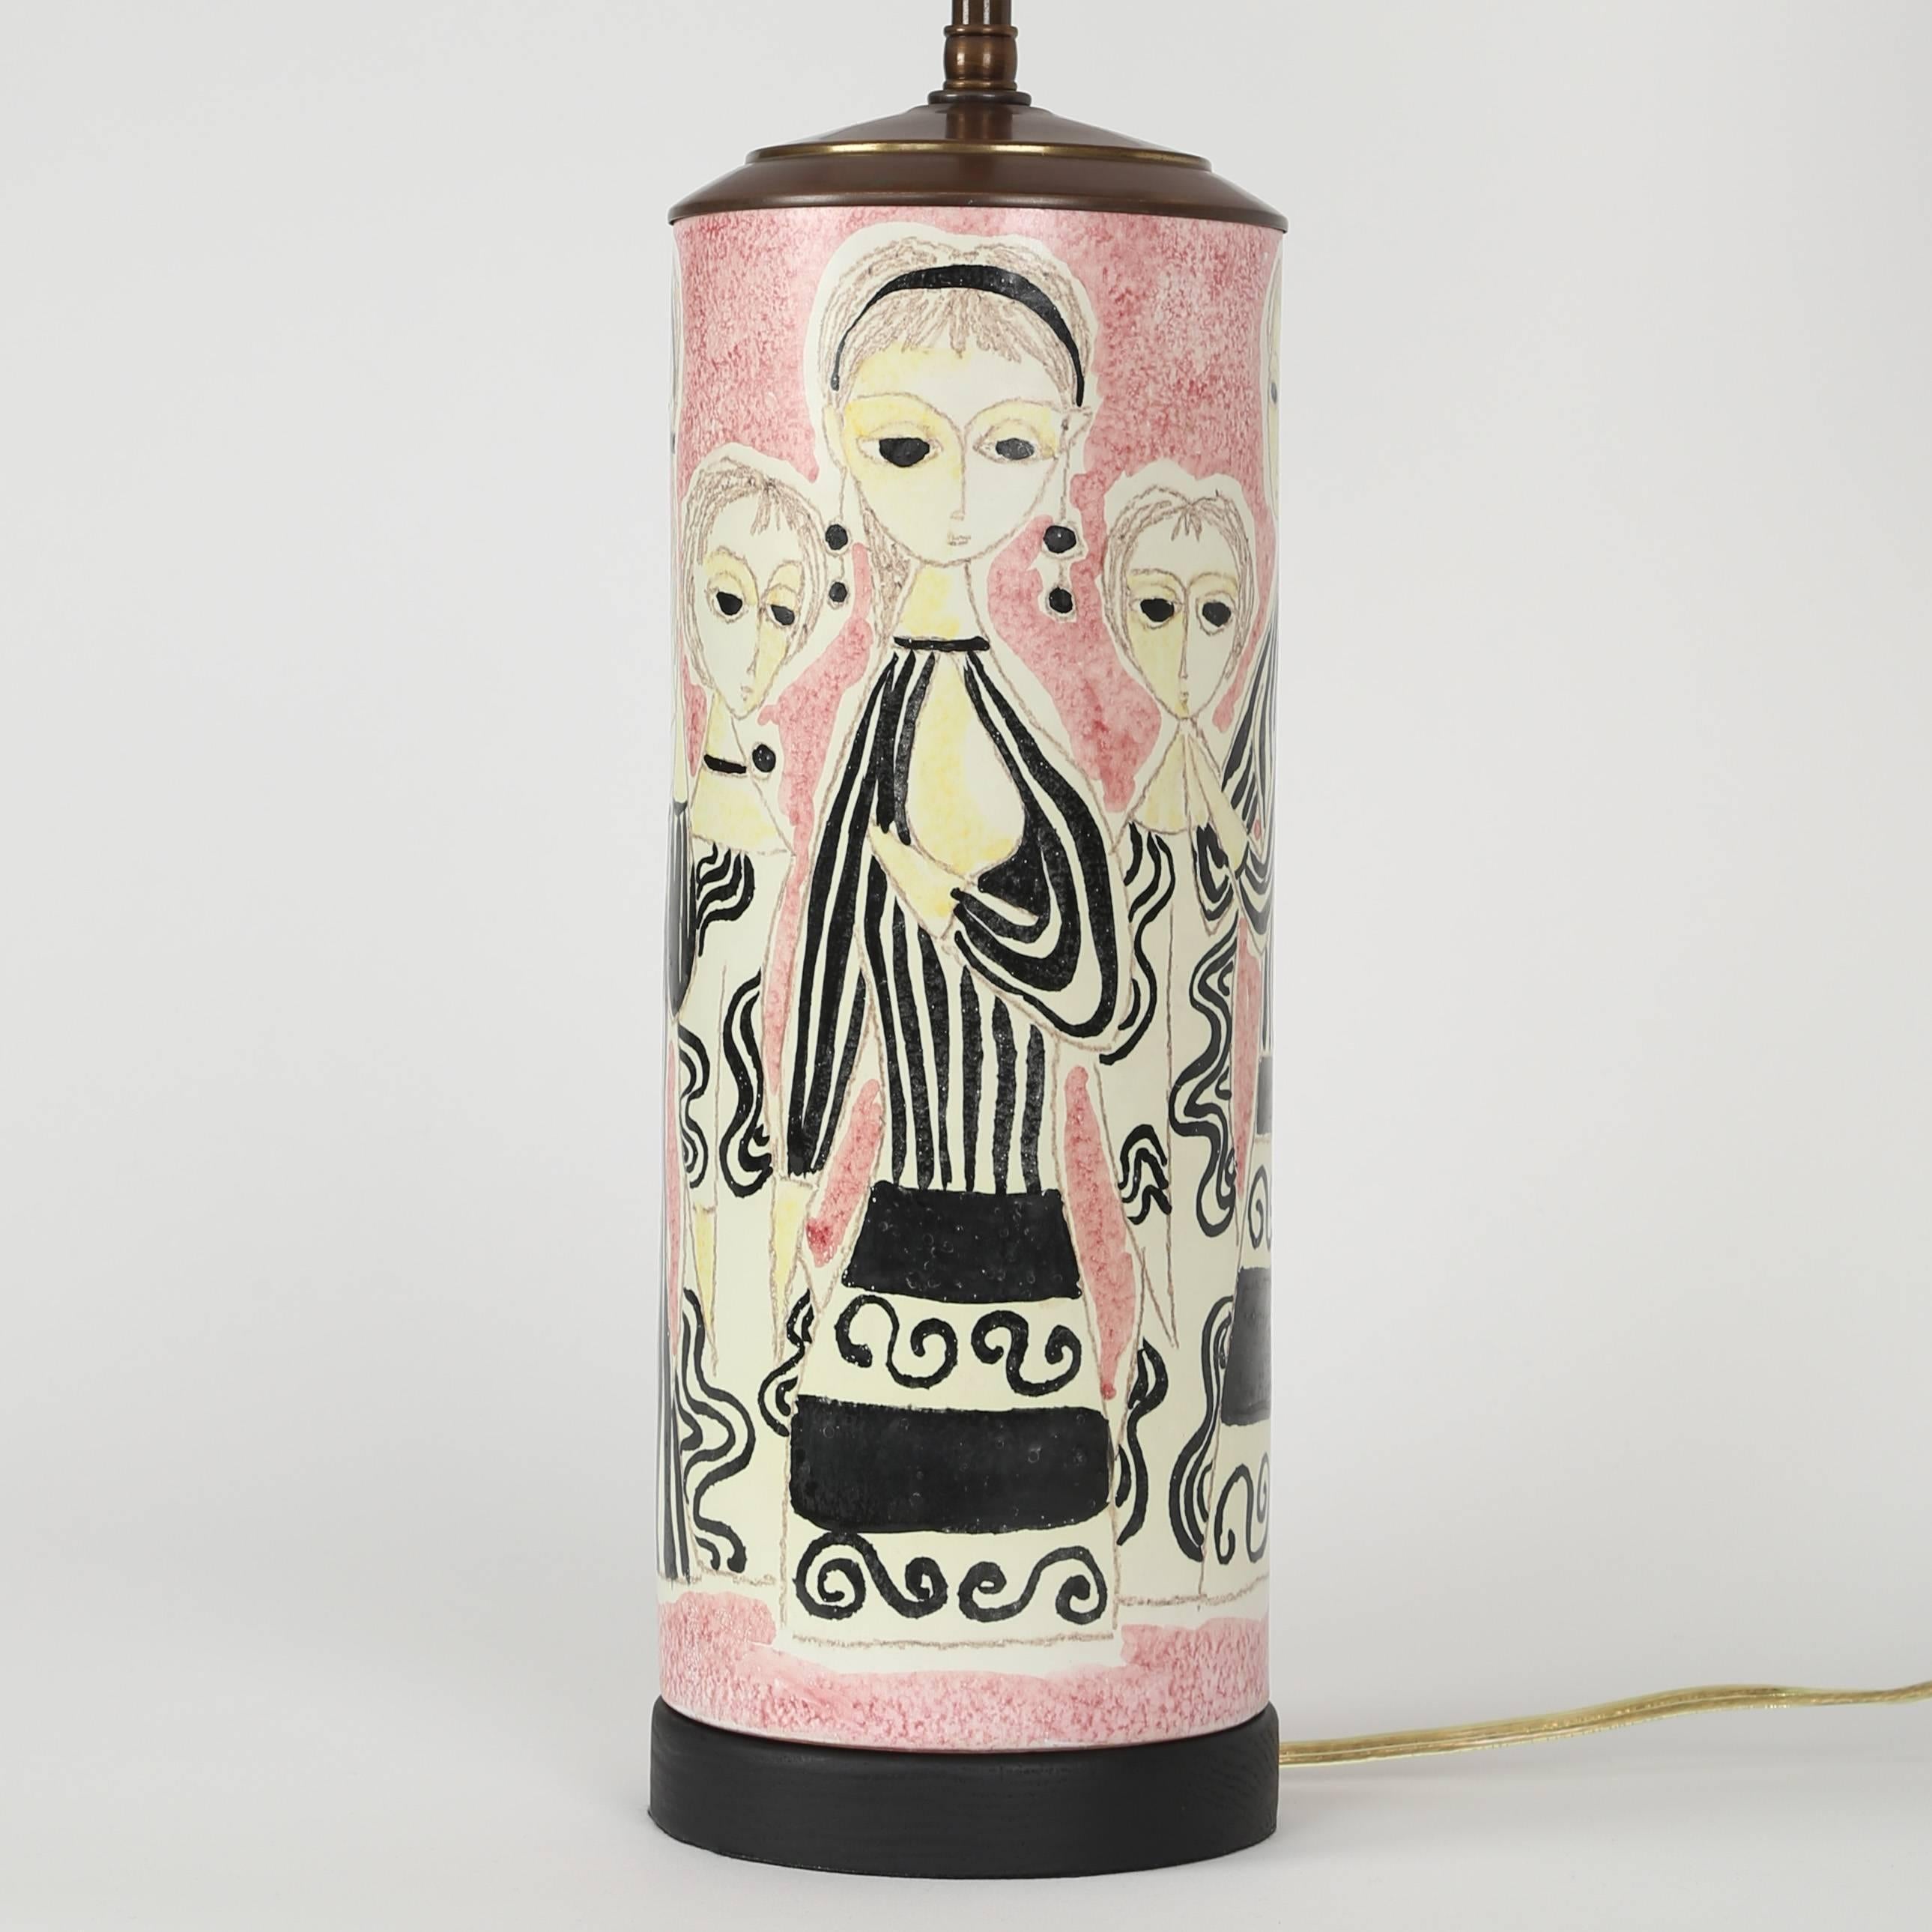 Diese charmante Keramik-Tischlampe zeigt Frauen in modischen schwarz-weißen Cocktailkleidern vor einem rosa Hintergrund. Neue Beschläge aus antikem Messing, doppelte Standardsteckdosen mit Zugketten und eine neue Verkabelung. Reste einer Signatur